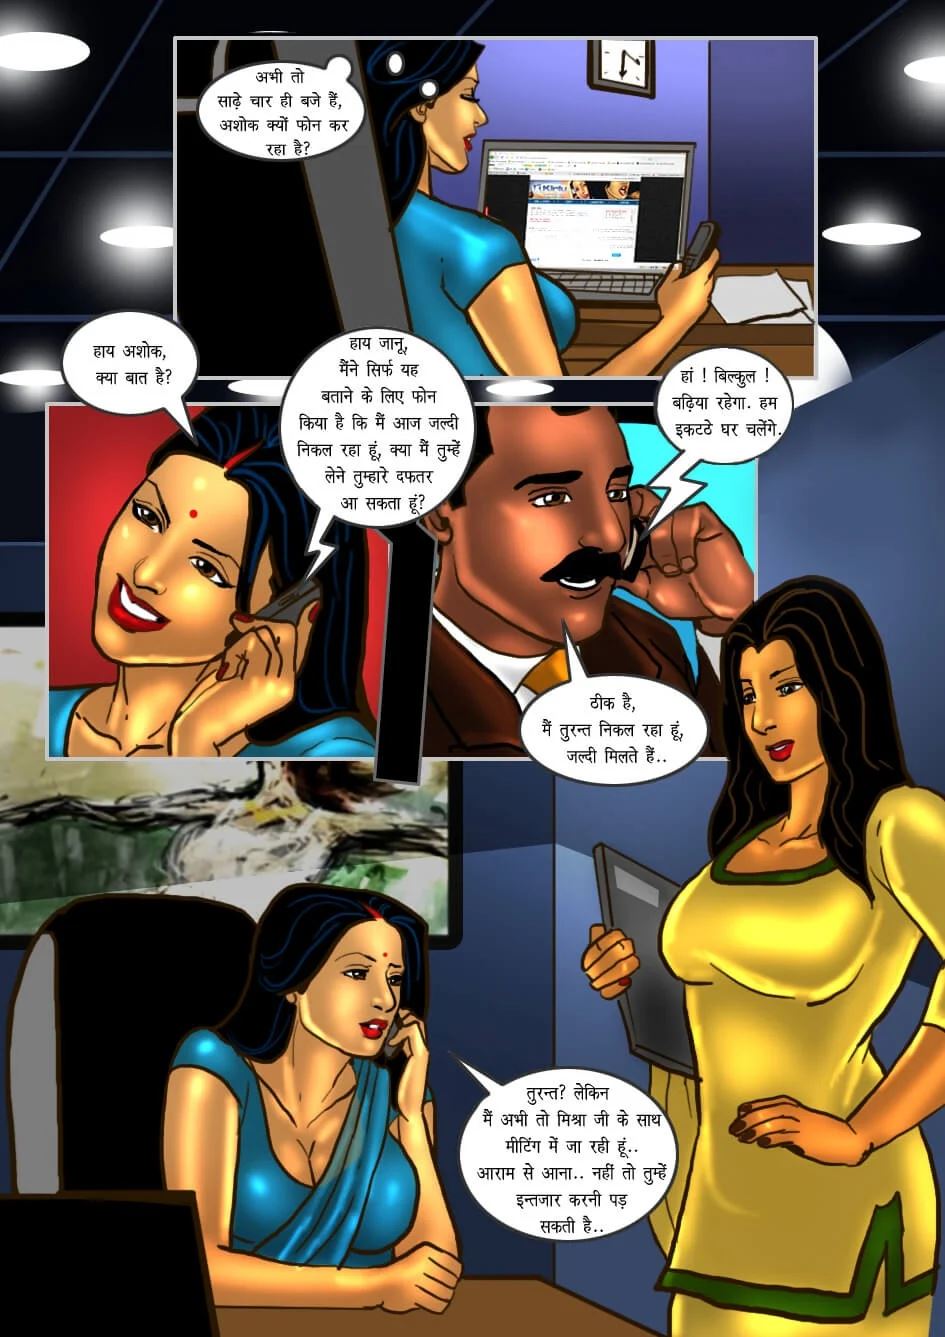 Savita Bhabhi Ki Hot Bur Ki Chudai - Savita Bhabhi [Hindi] Porn Comics by [Kirtu] (Porn Comic) Rule 34 Comics â€“  R34Porn